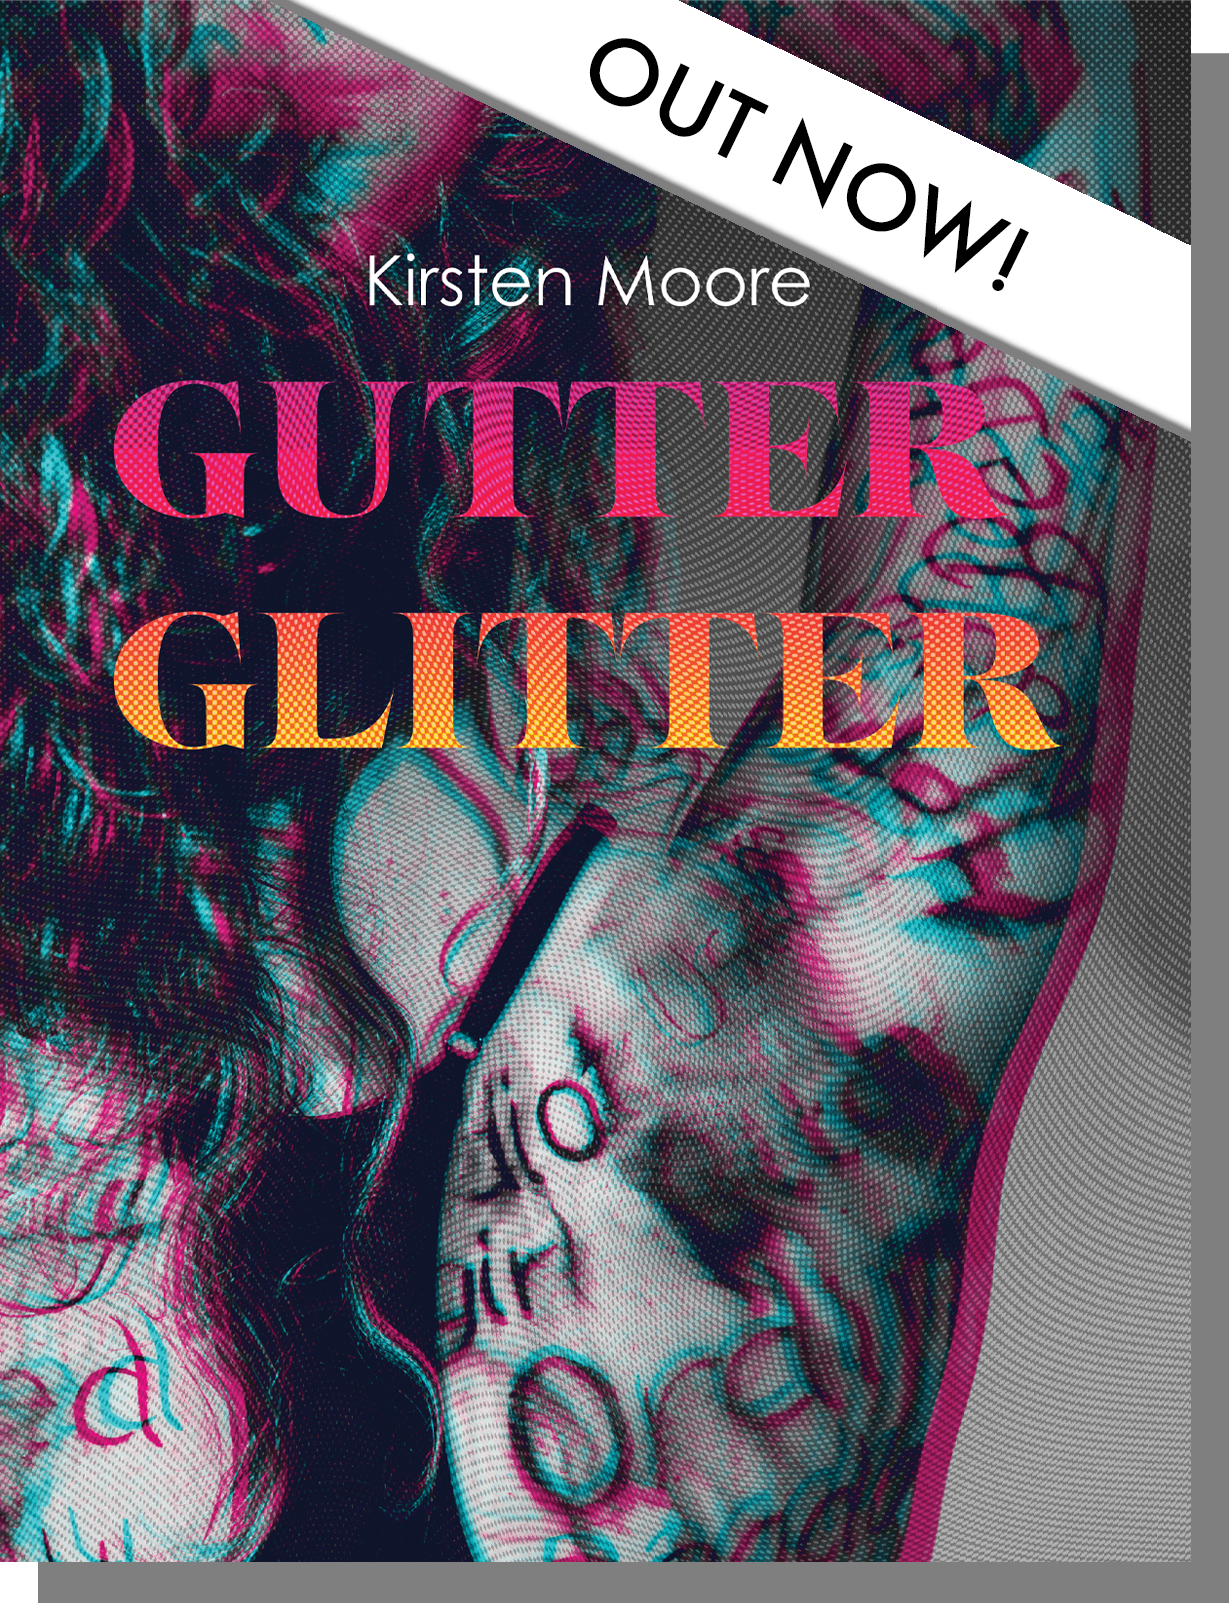 Buy Gutter Glitter